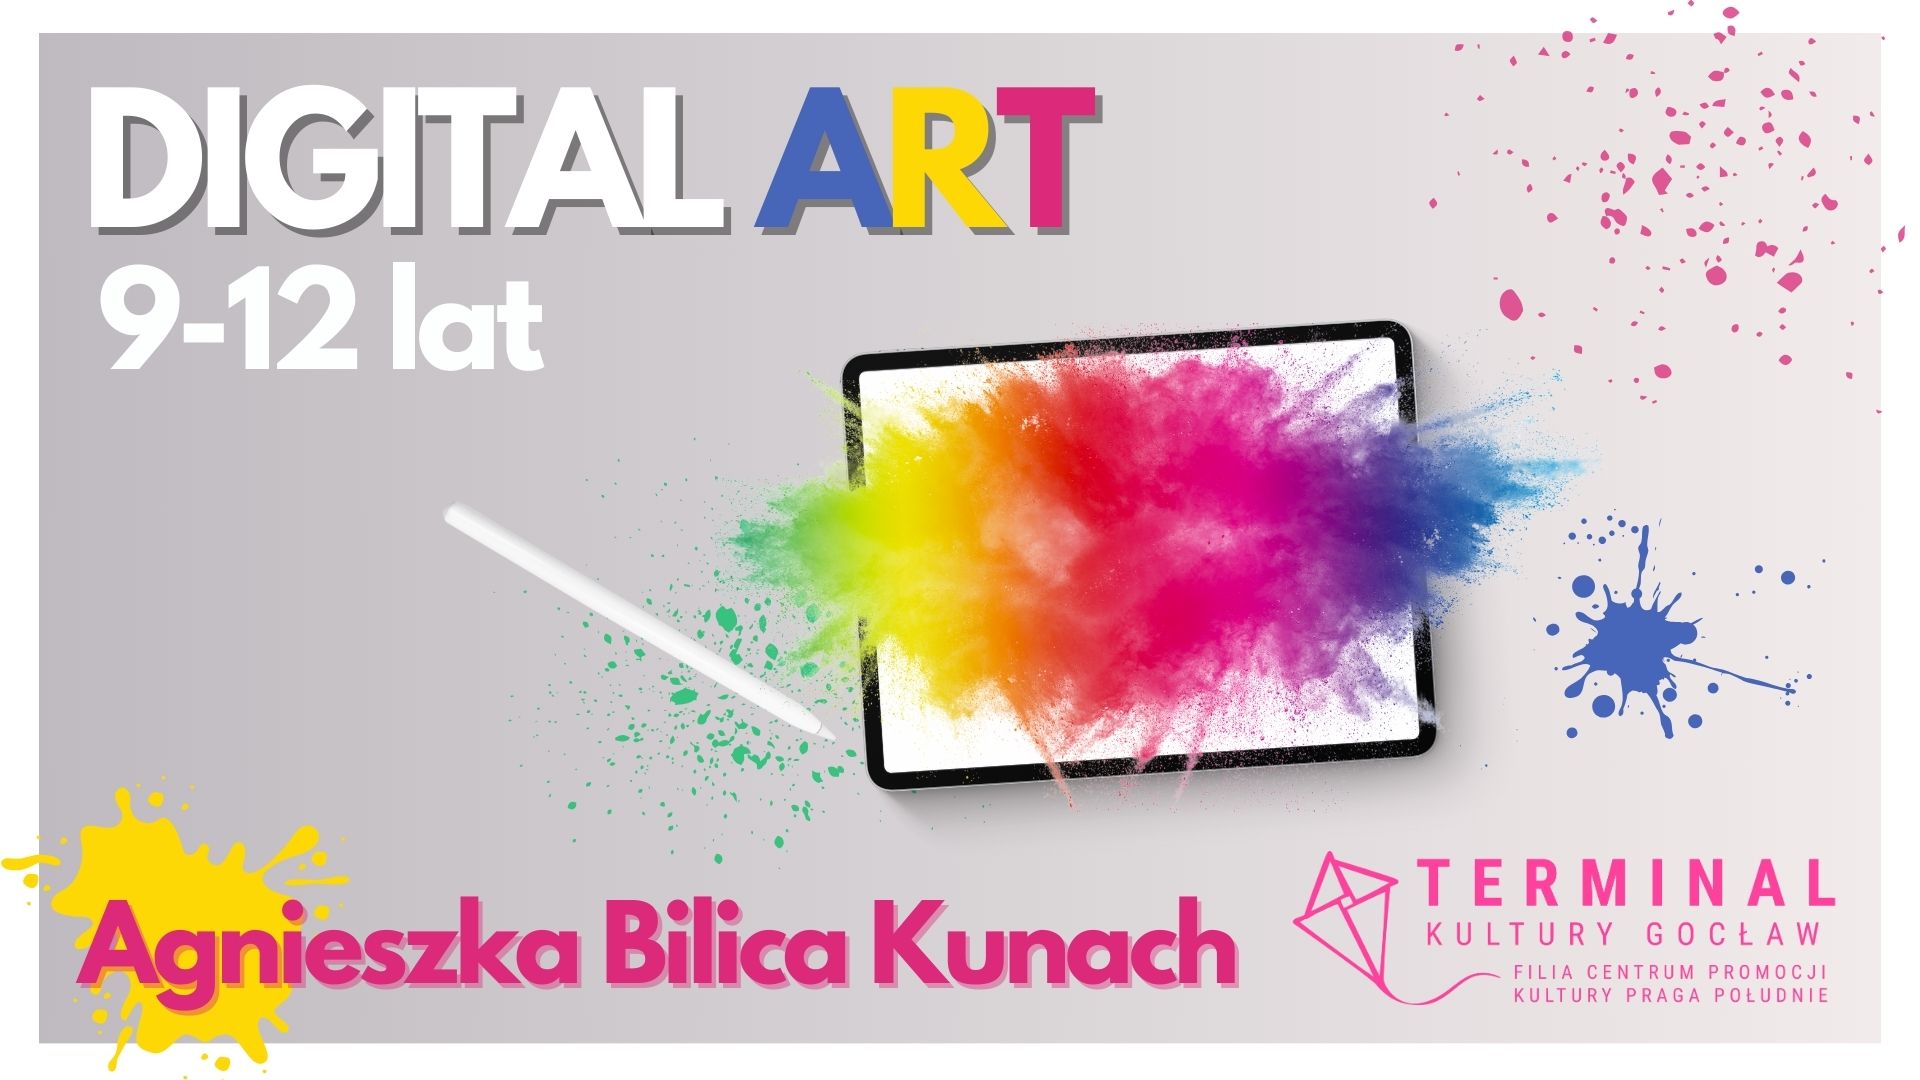 Digital Art dla dzieci w wieku 9 - 12 lat